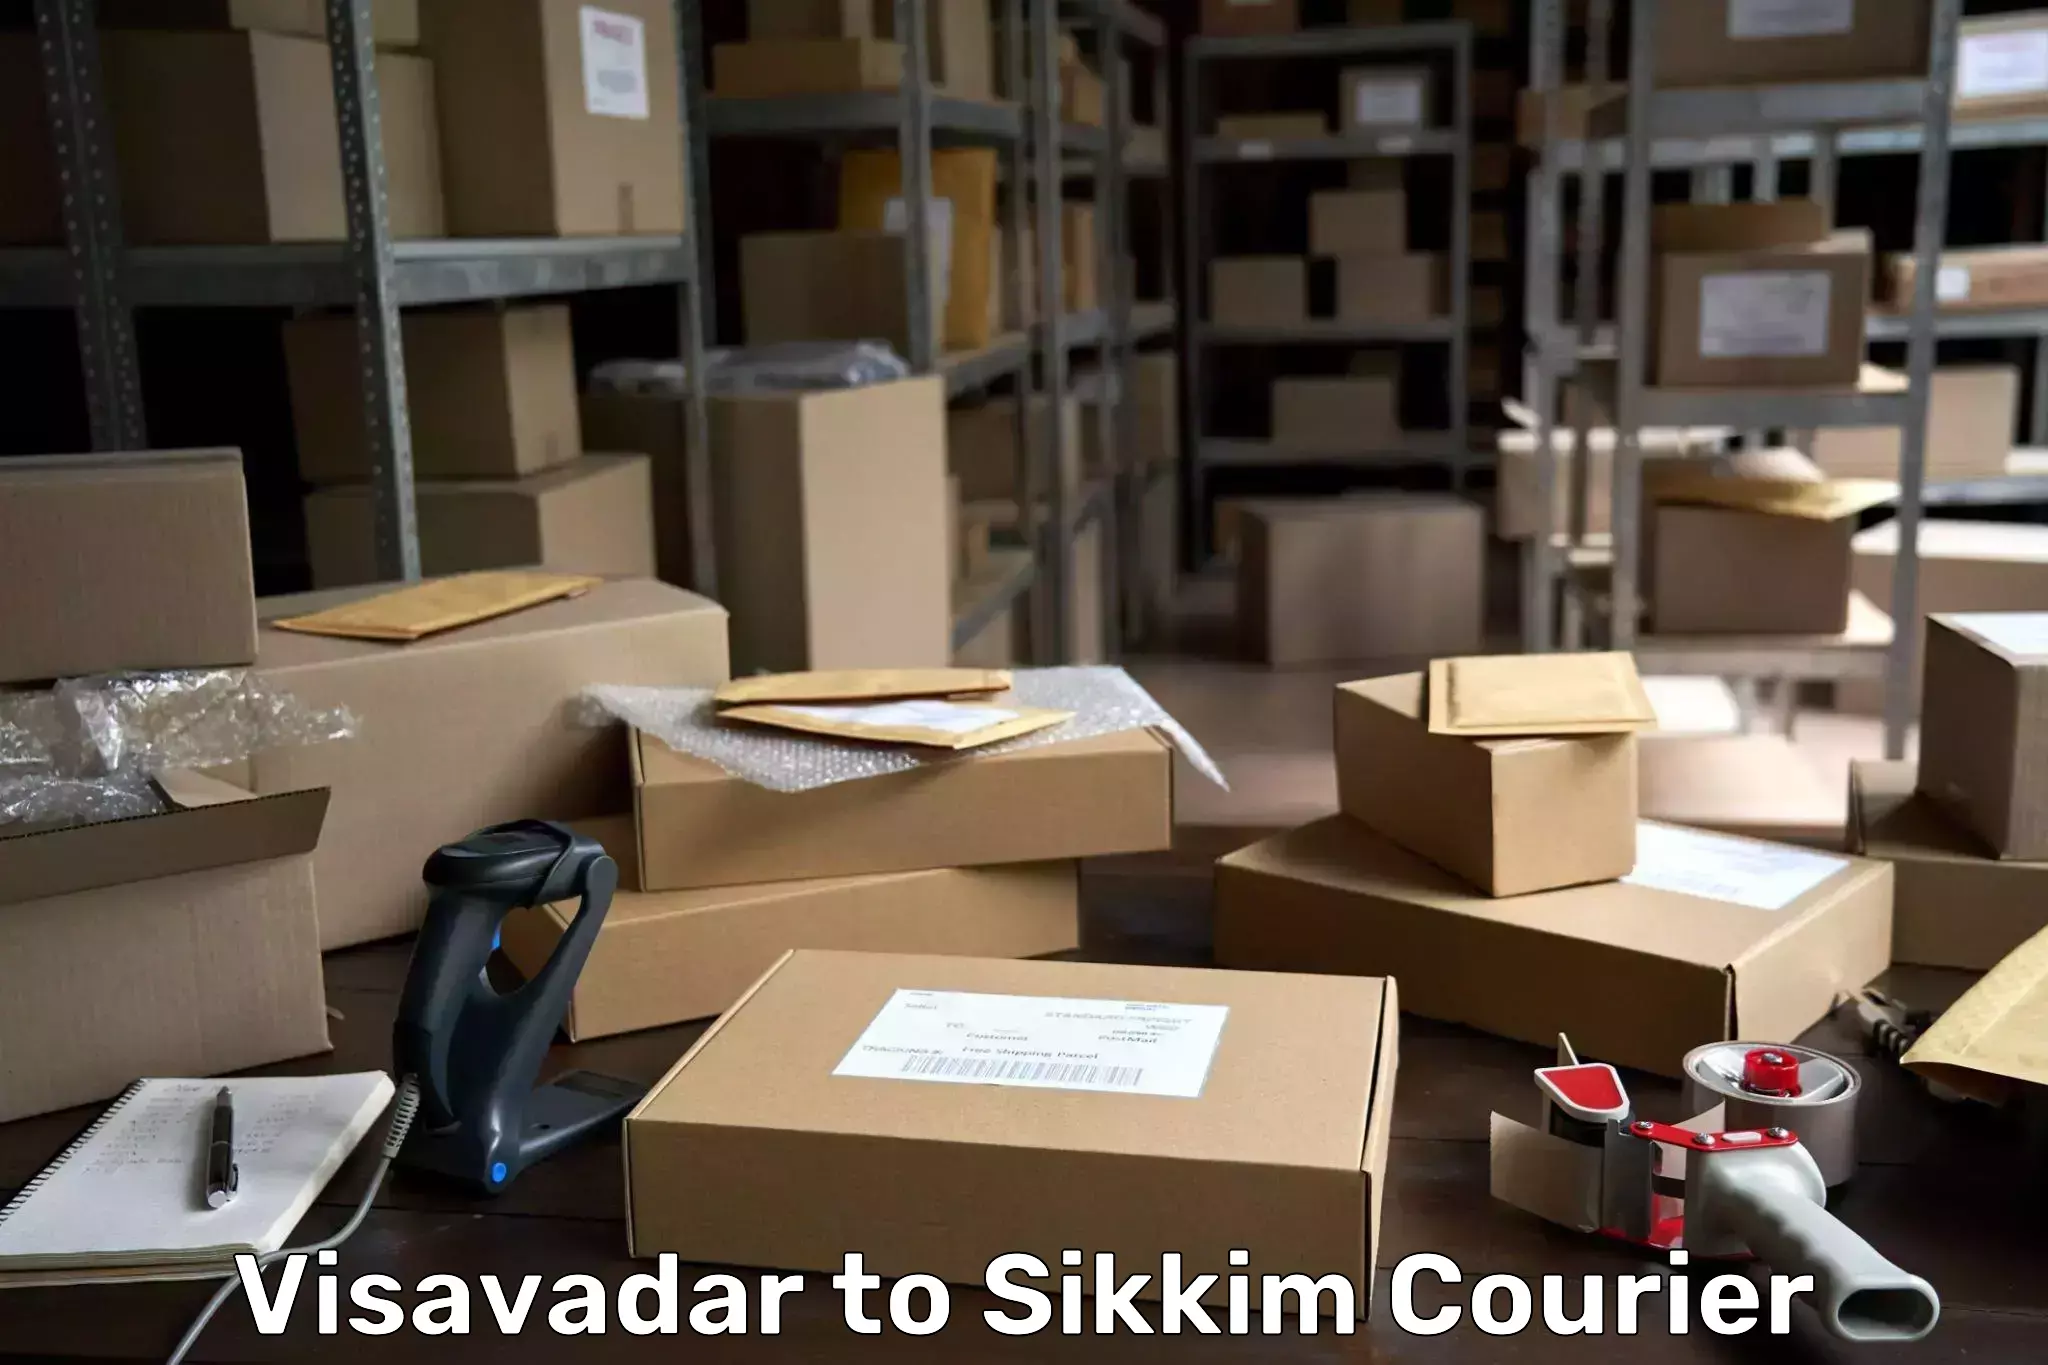 Efficient freight service Visavadar to Sikkim